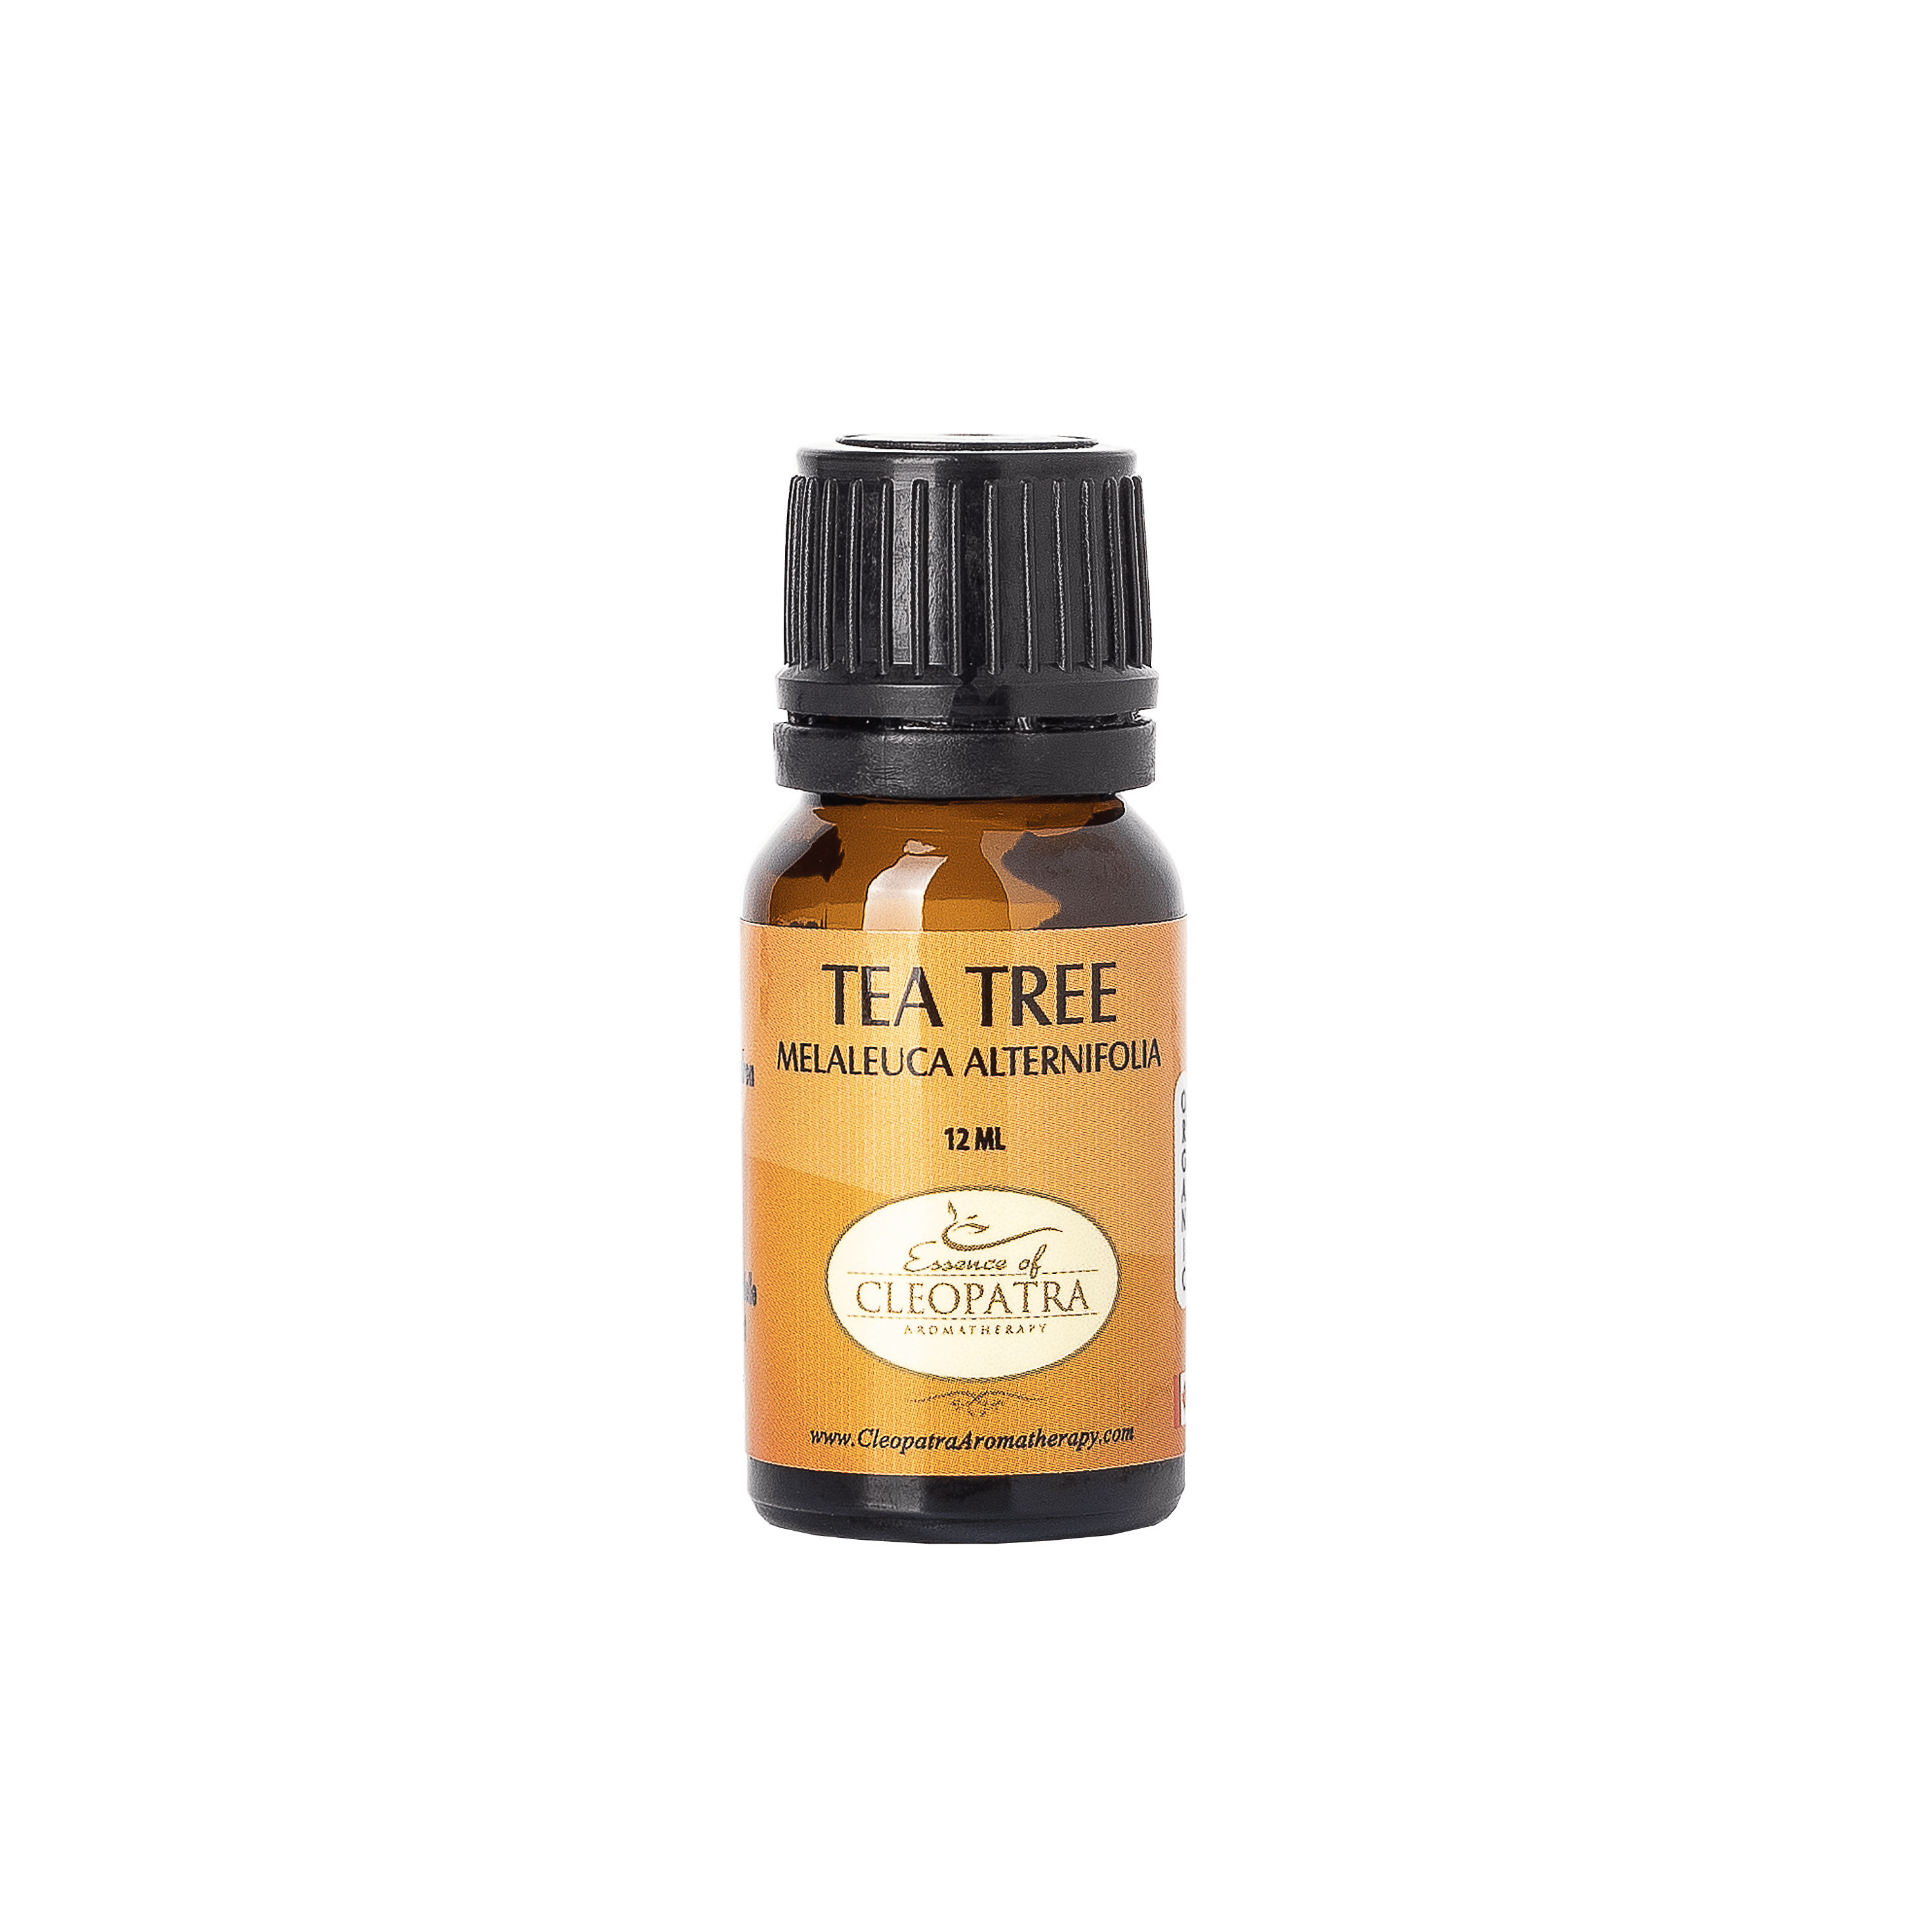 TEA TREE (Organic) essential oil 10ml.